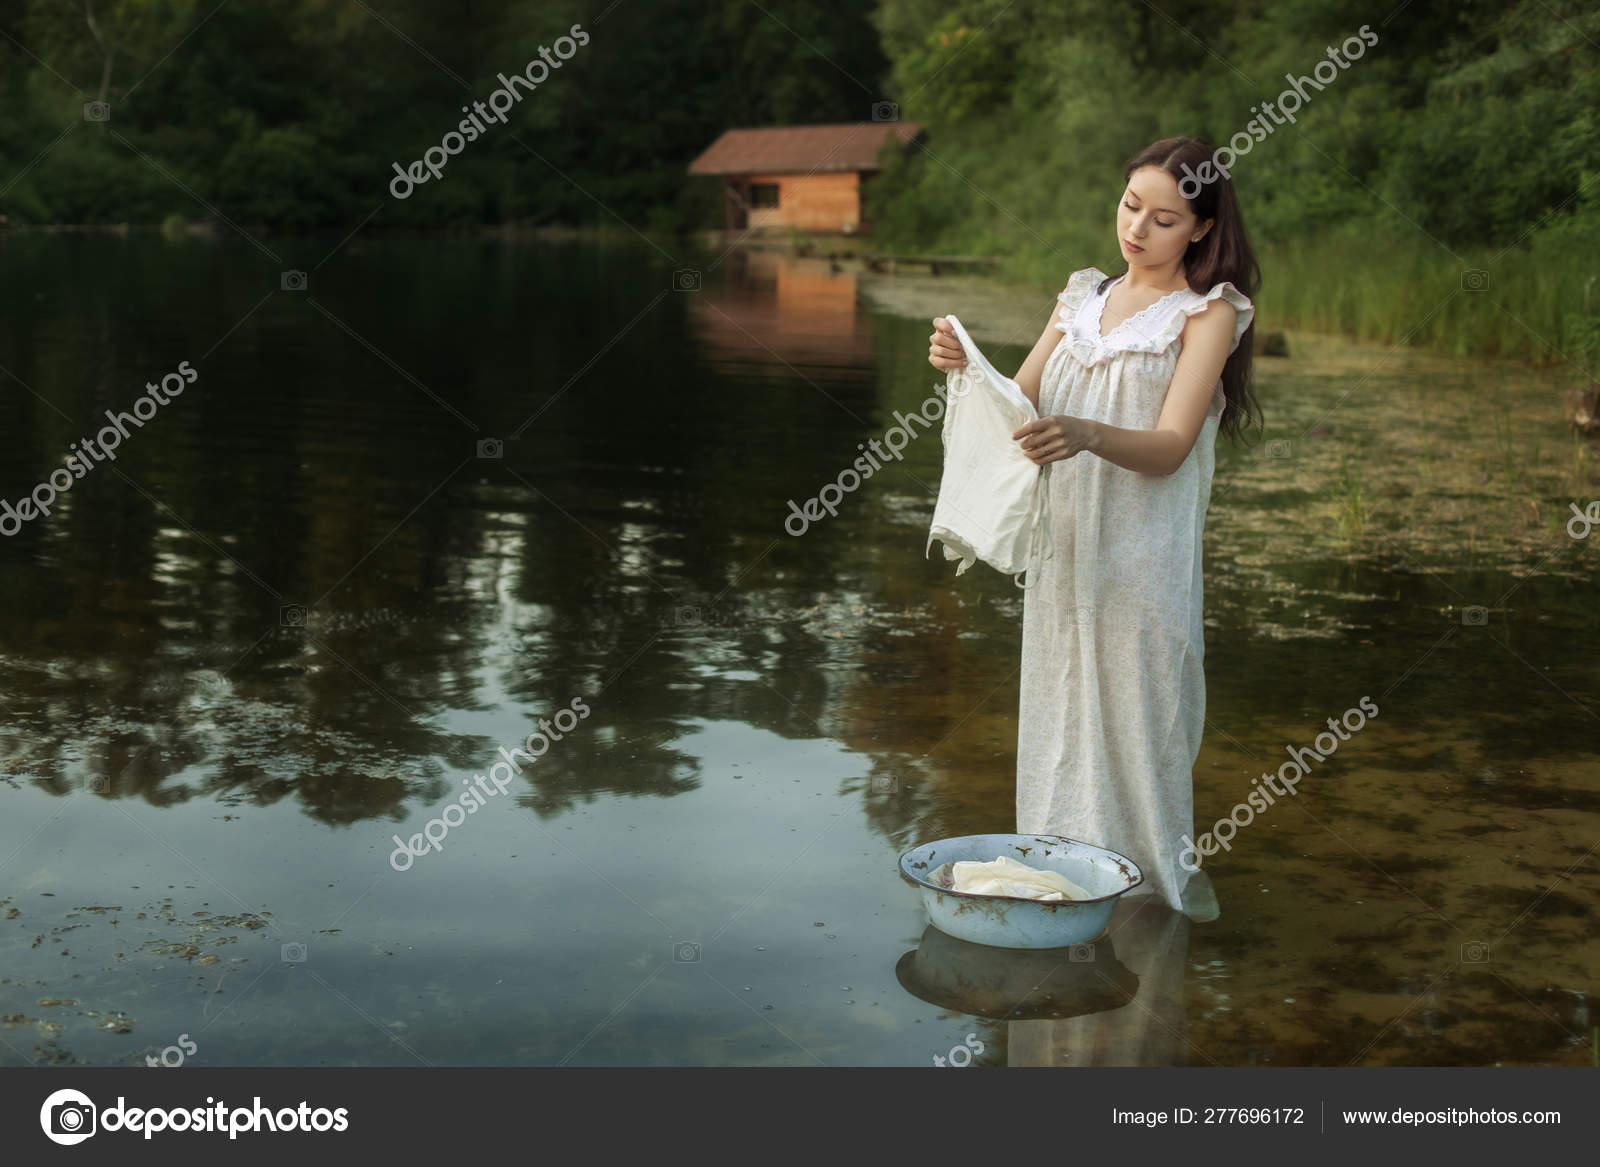 Стирают белье в реке. Стирка белья на речке. Девушка стирает в реке. Фотосессия стирка на реке. Стирка белья в реке.